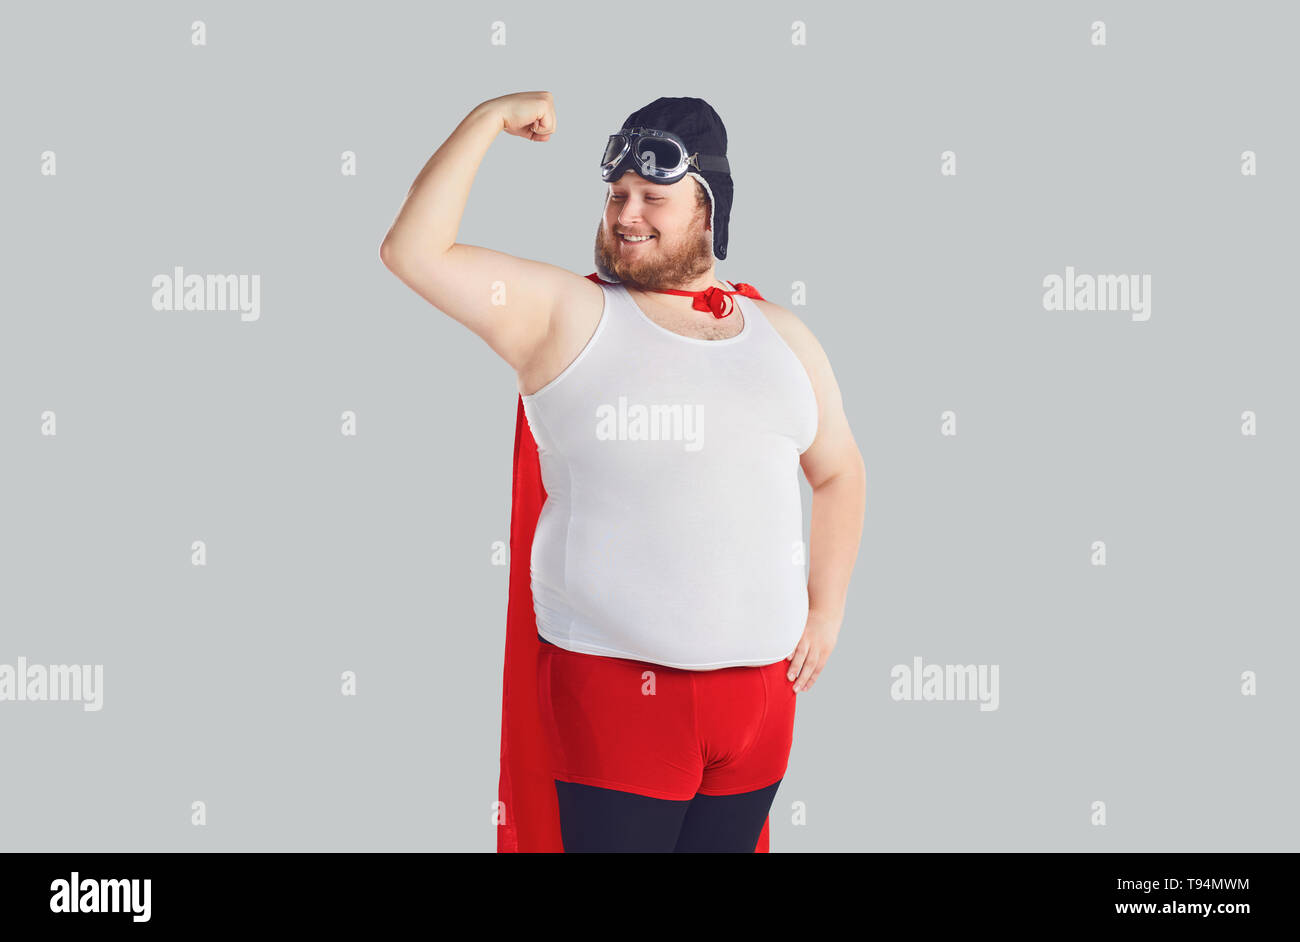 Funny fat man in einen Superhelden Kostüm hob die Hand. Stockfoto